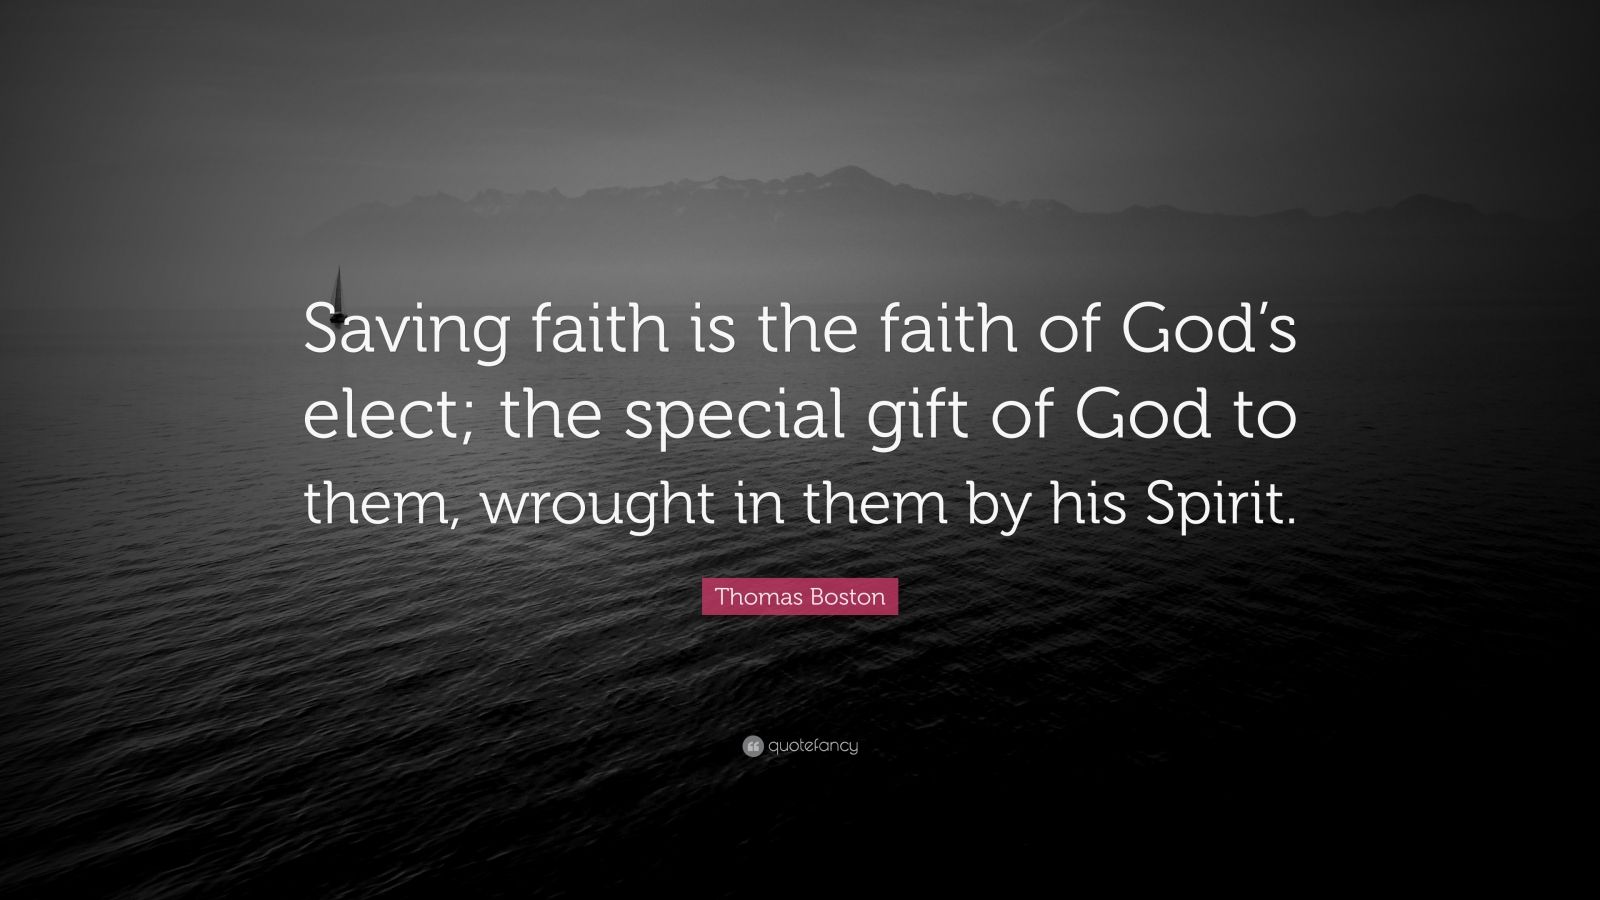 Thomas Boston Quote “Saving faith is the faith of God’s